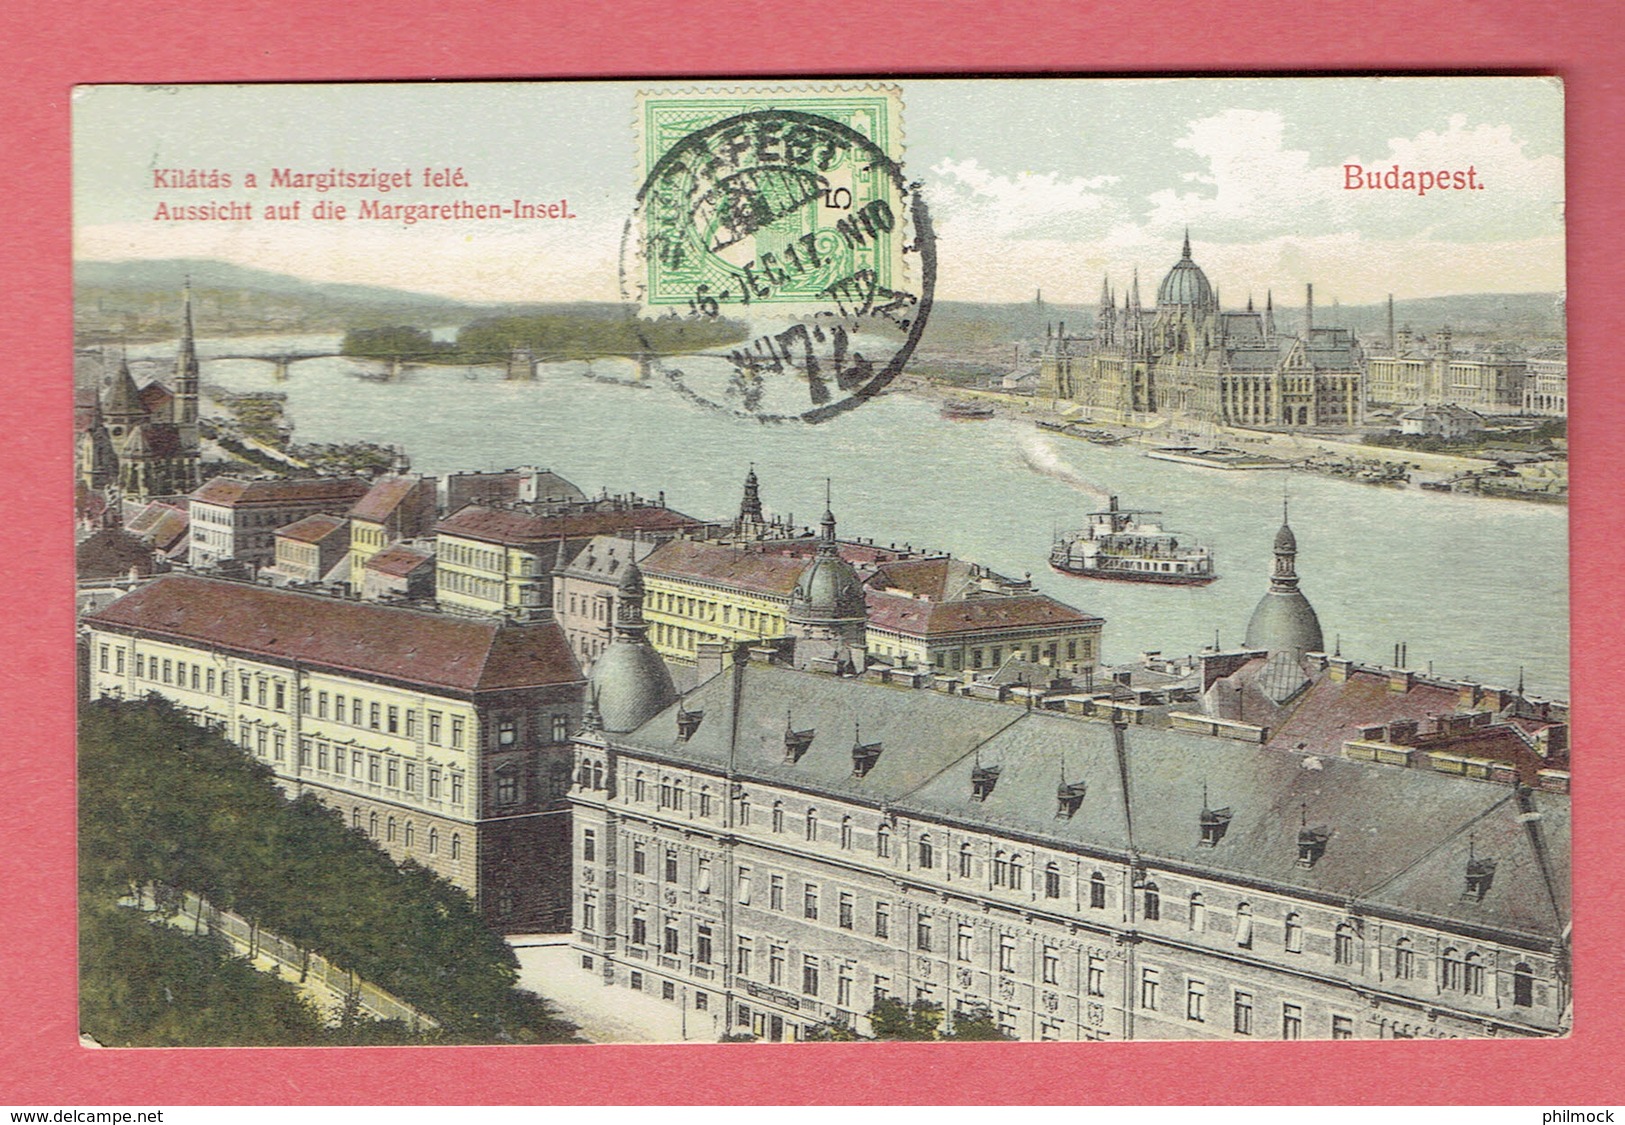 Budapest-Hongrie 1917 - Kilàtàs A Margitsziget Felé - Color - Occupation Allemande - Hongrie